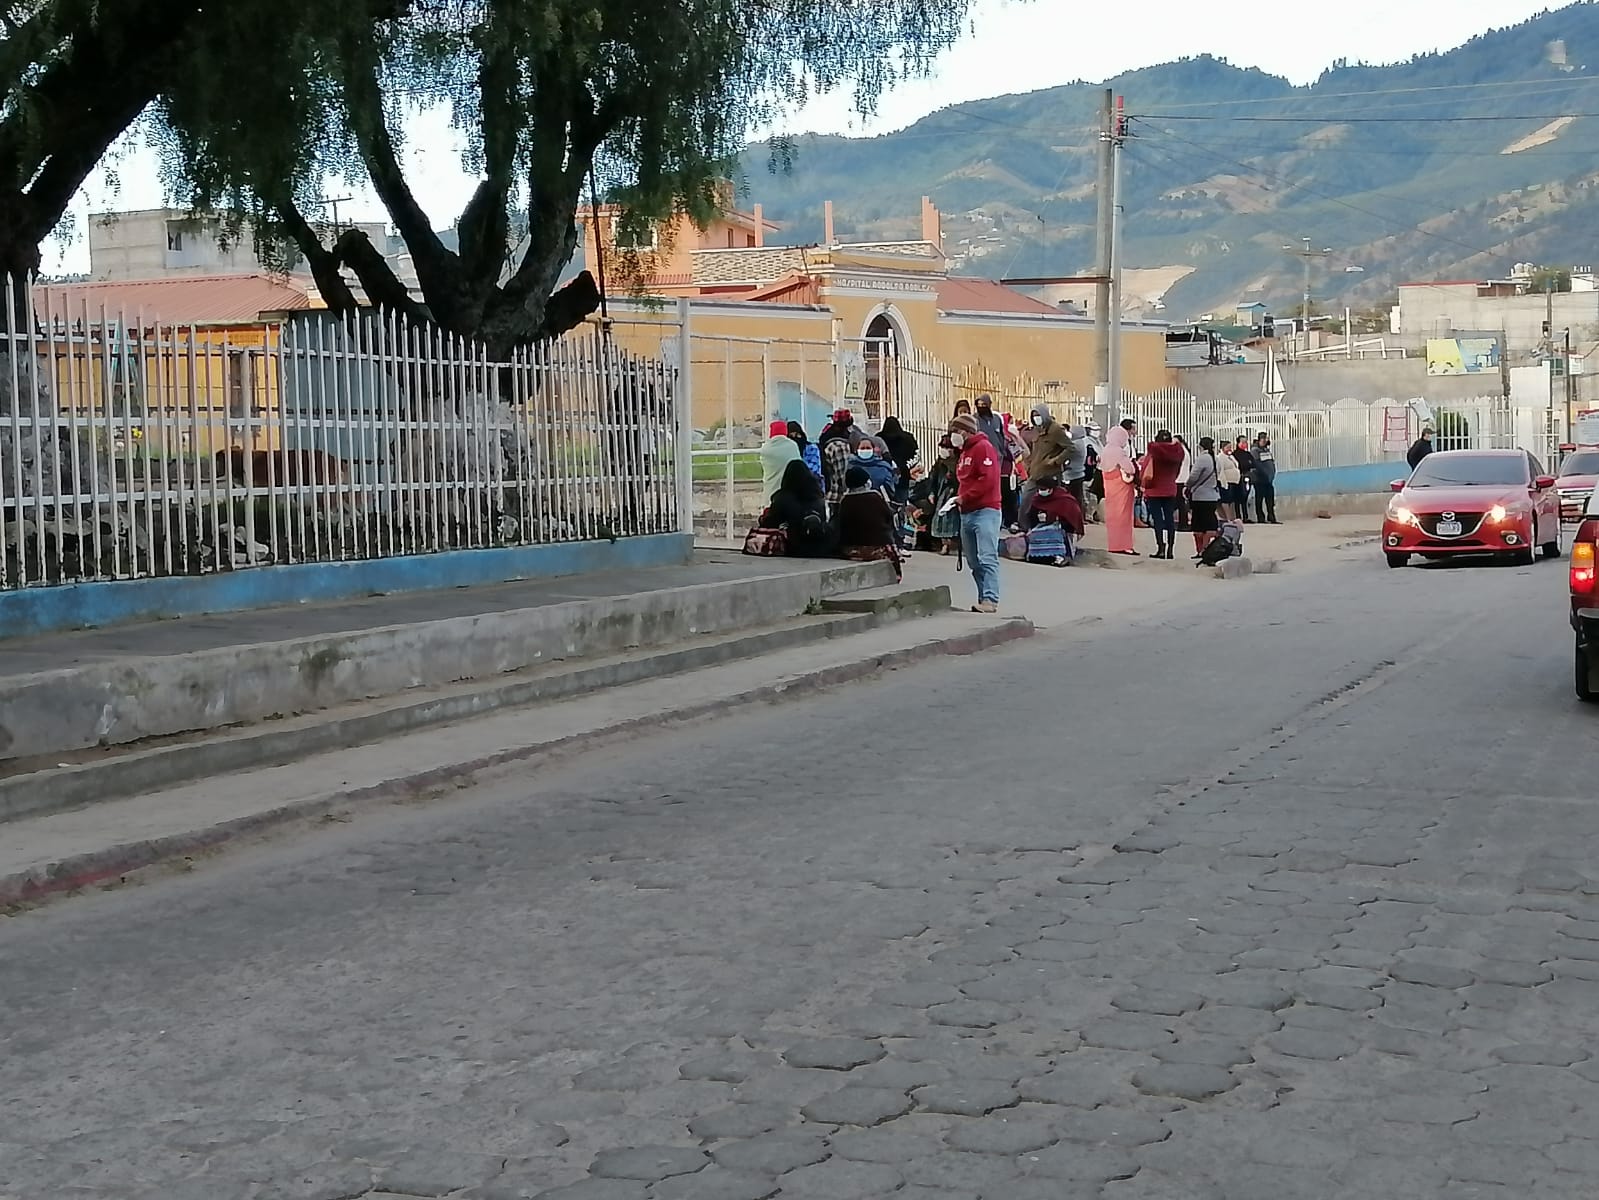 Viajan de la Costa Sur a Quetzaltenango desde temprano en busca de la tarjeta de pulmones